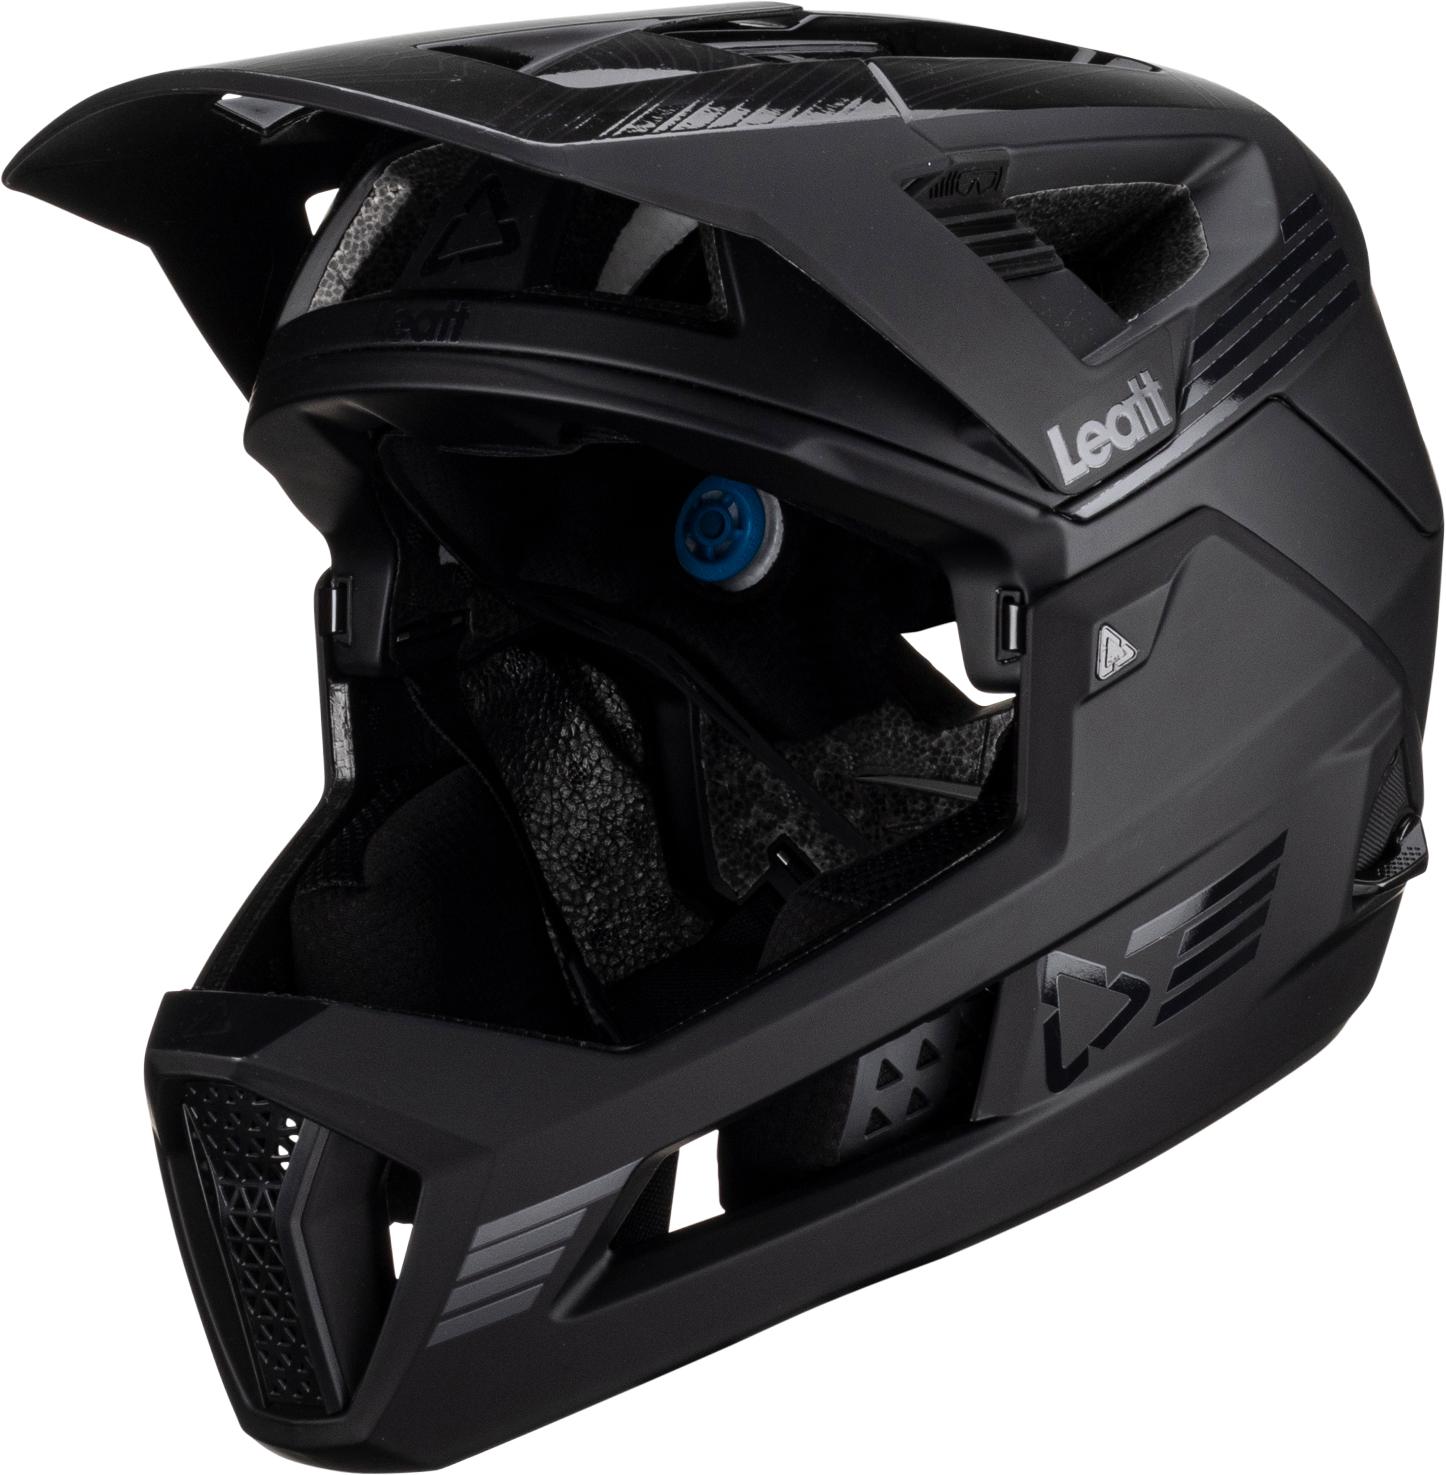 Leatt Mtb Enduro 4.0 Helmet - Stealth